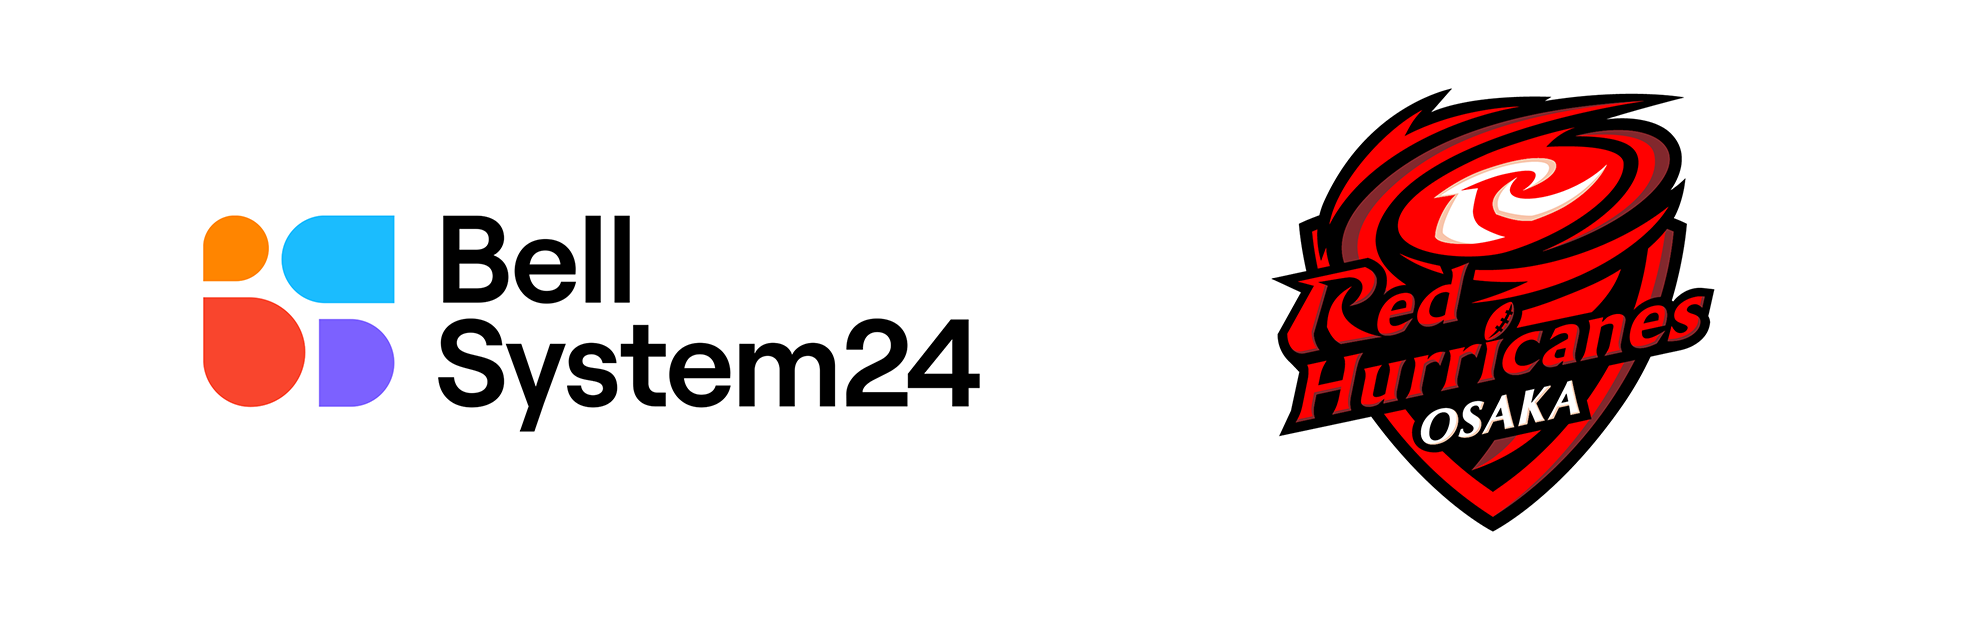 ベルシステム24/レッドハリケーンズ大阪 ロゴ